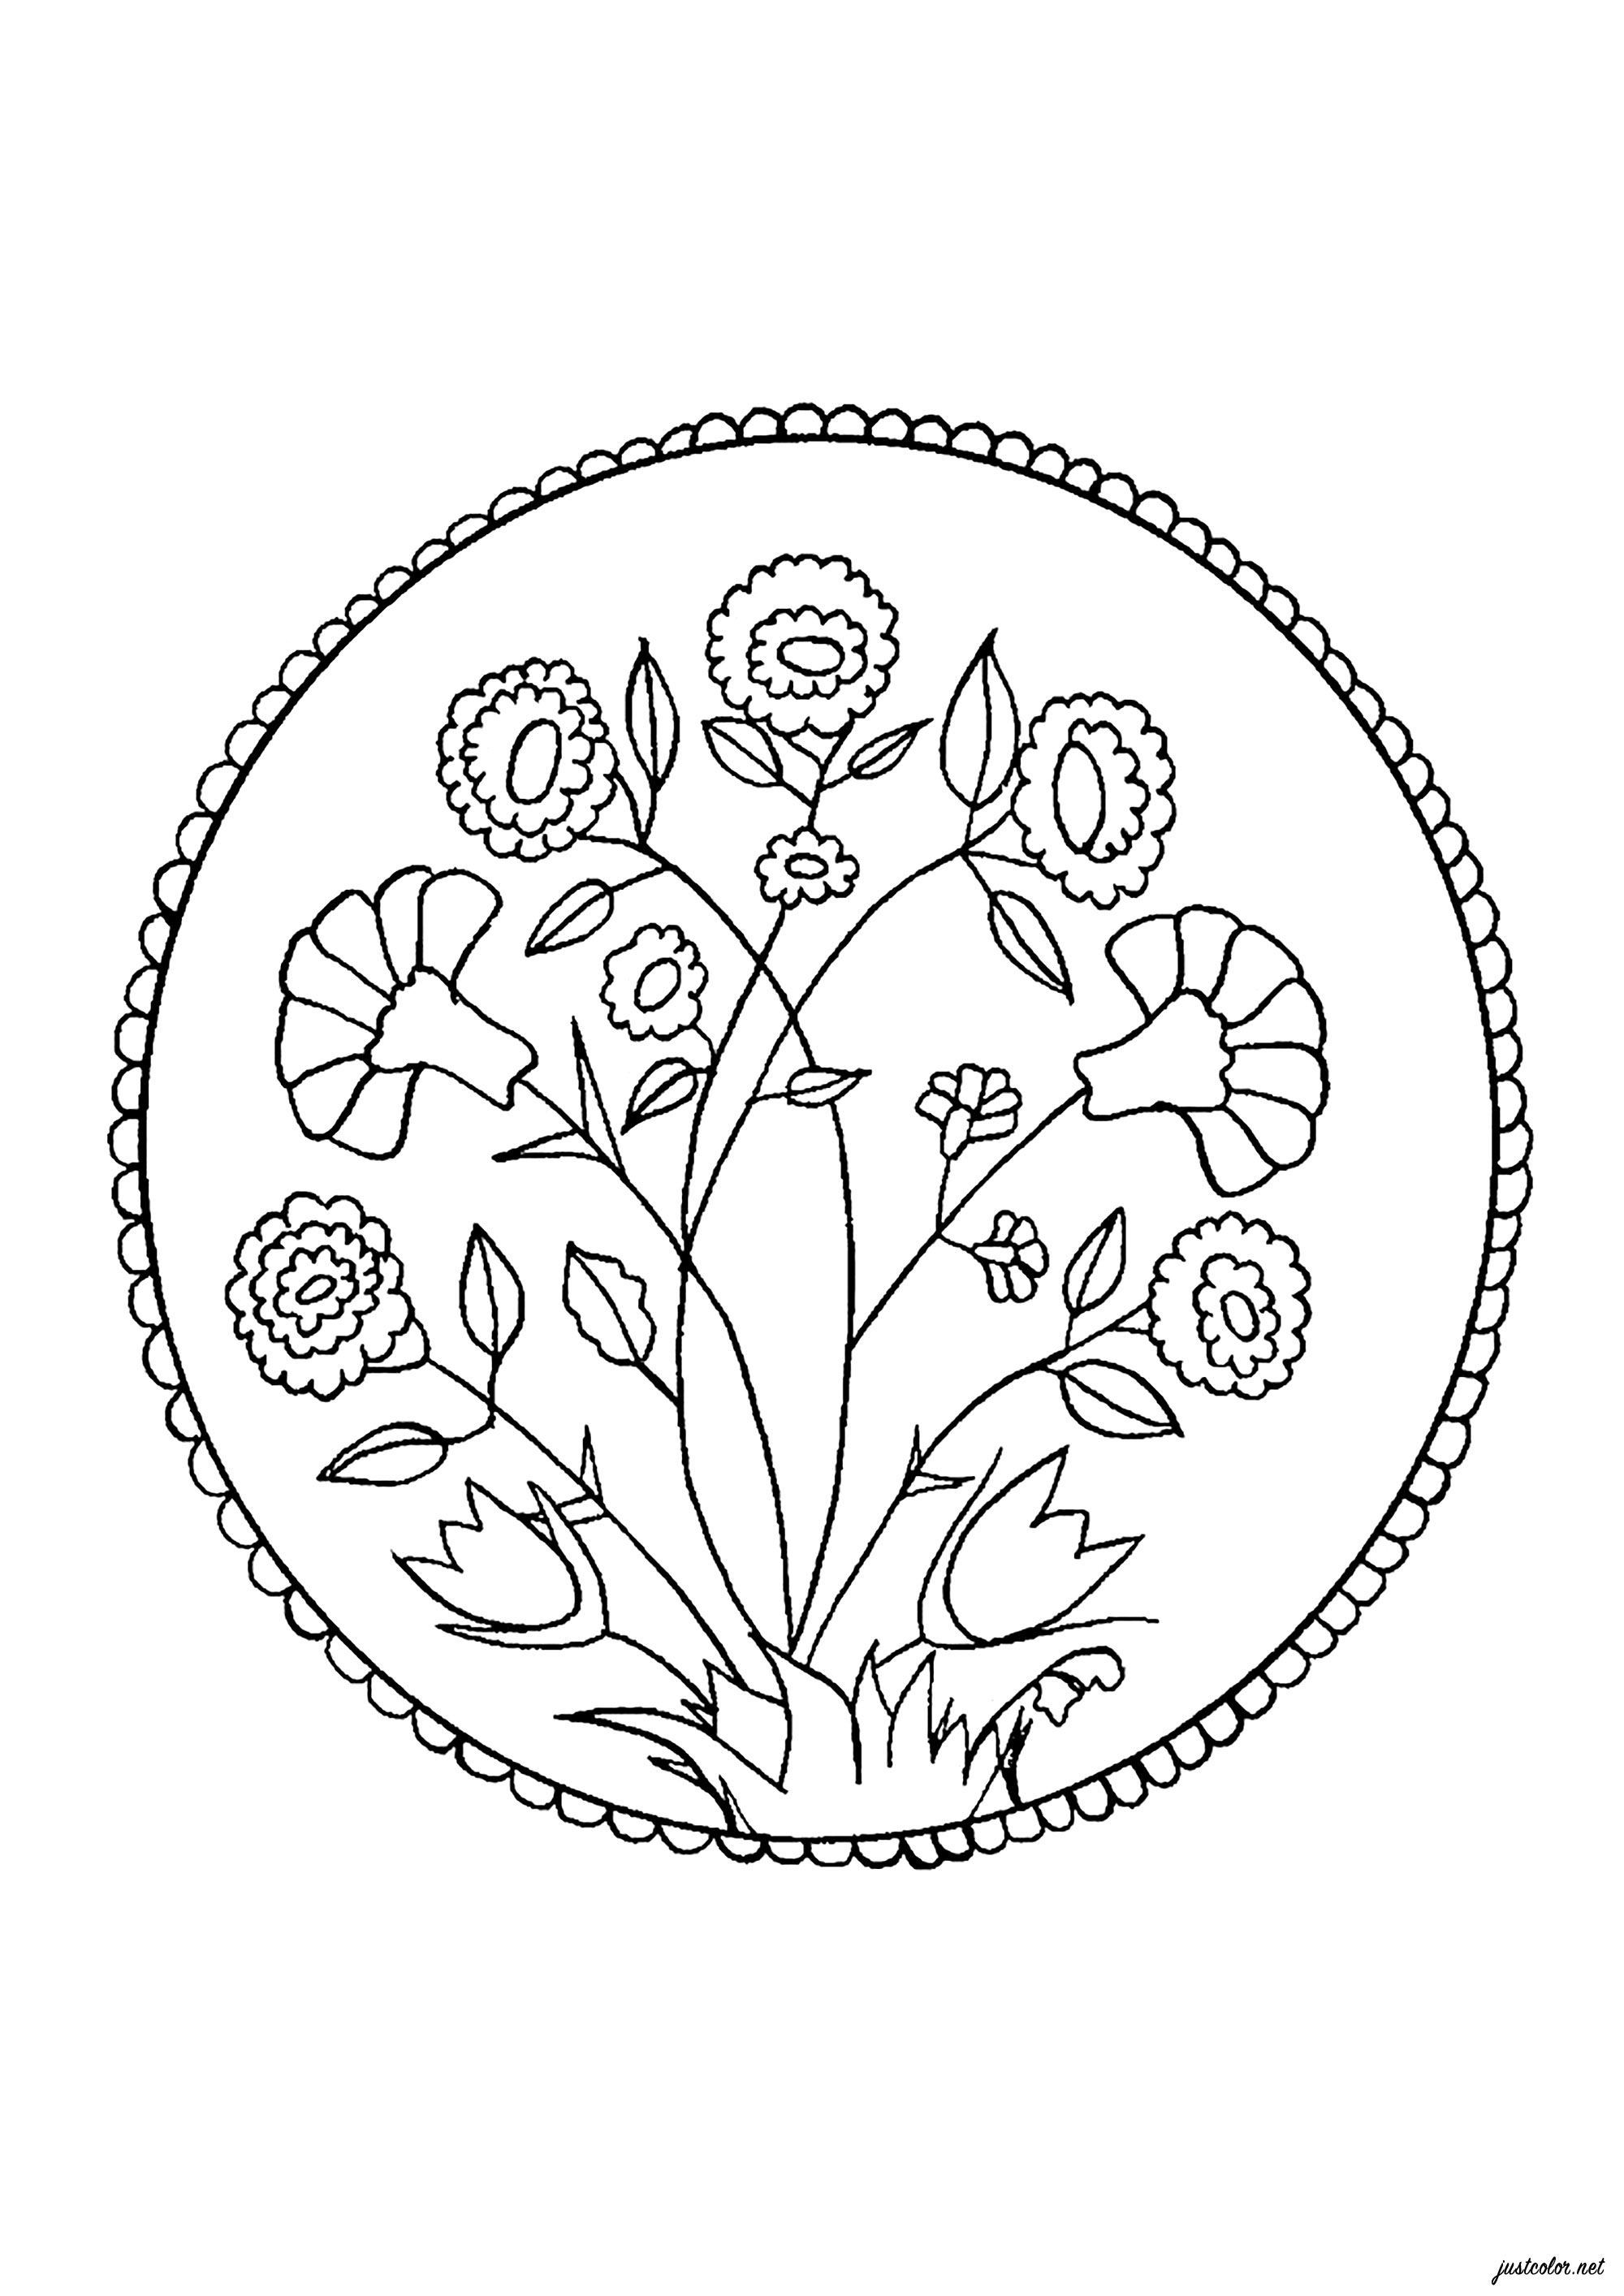 Colorazione ispirata a un piatto del XVI secolo raffigurante varie piante e fiori. Ogni elemento è presentato in modo molto dettagliato e offre la possibilità di rilassarsi colorandolo con i colori che preferite.